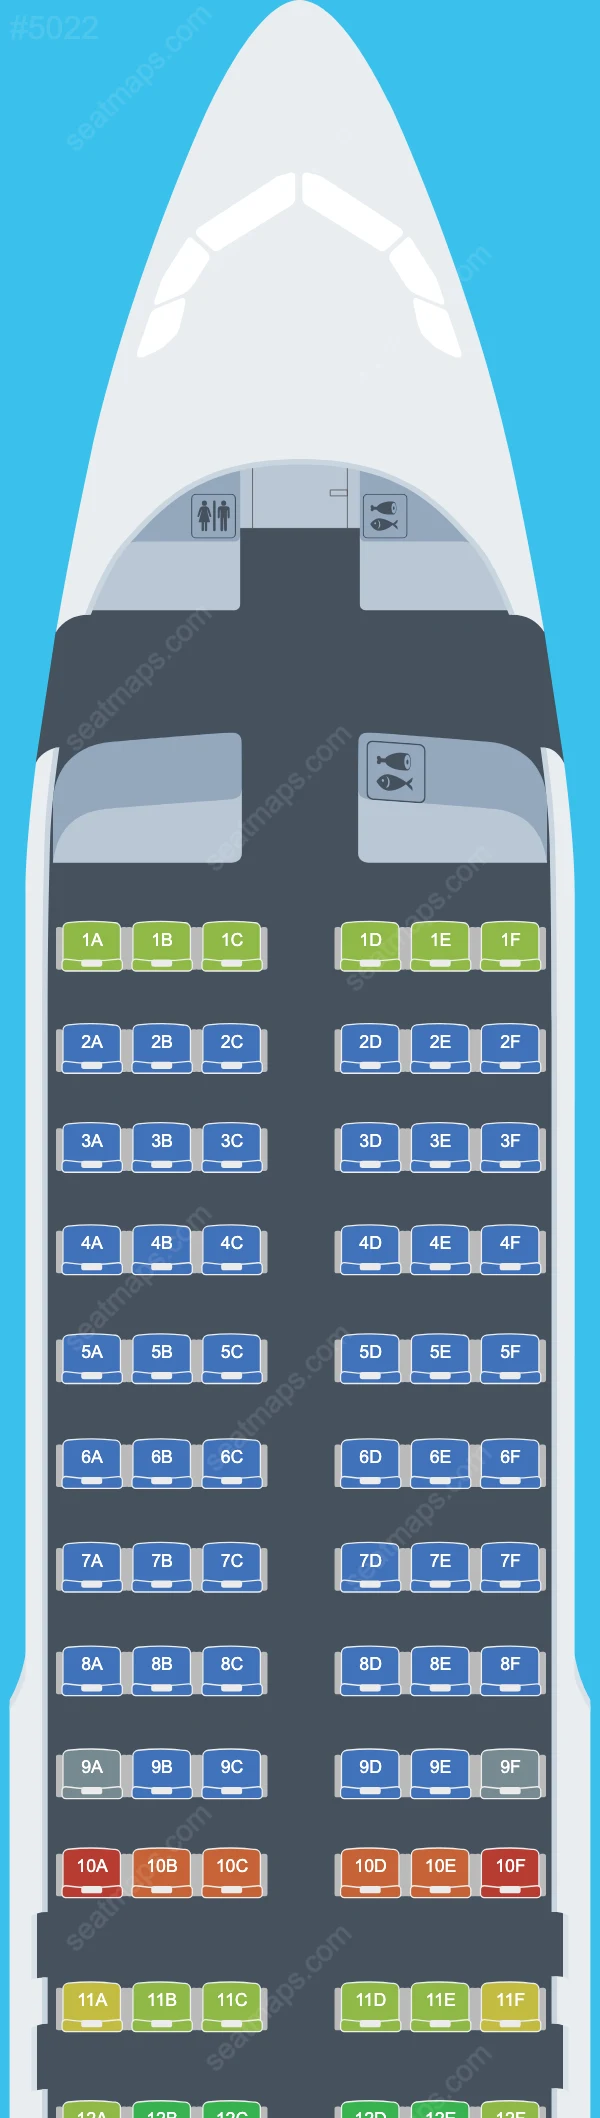 Air Malta Airbus A320 Seat Maps A320-200 V.2